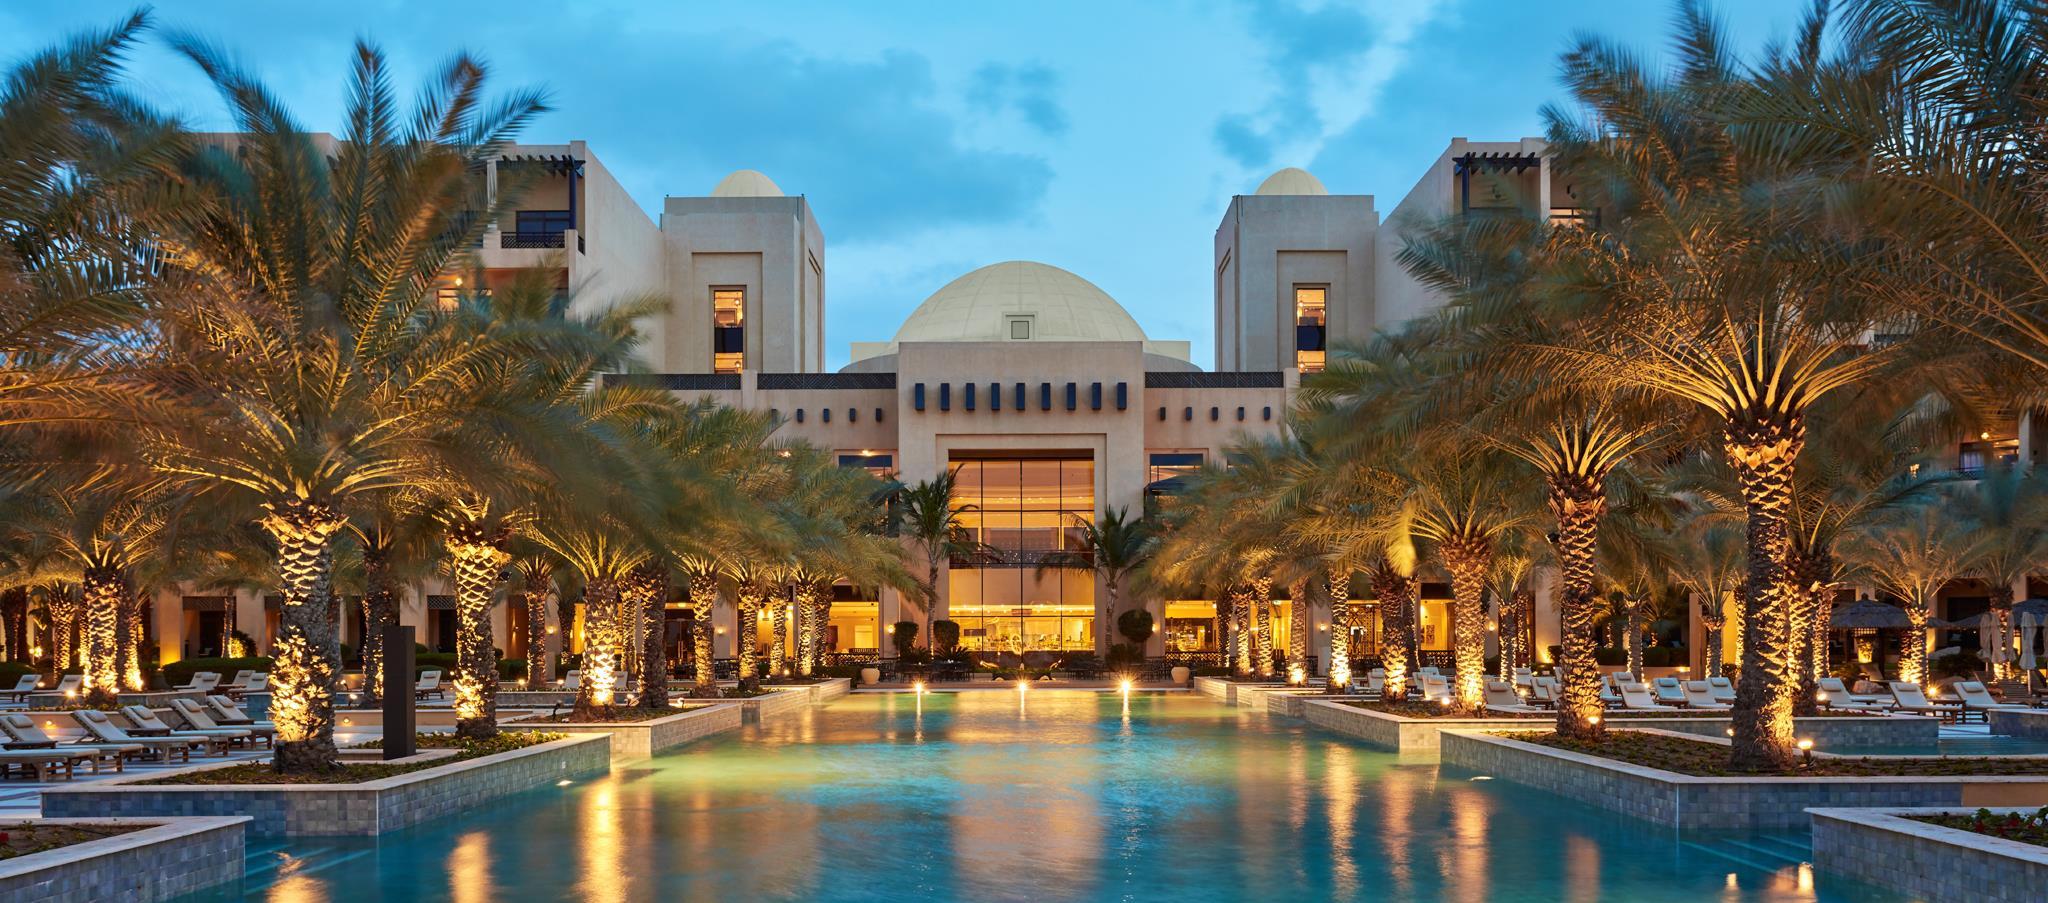 Рас-Аль-Хайма в ОАЭ: обзор курорта